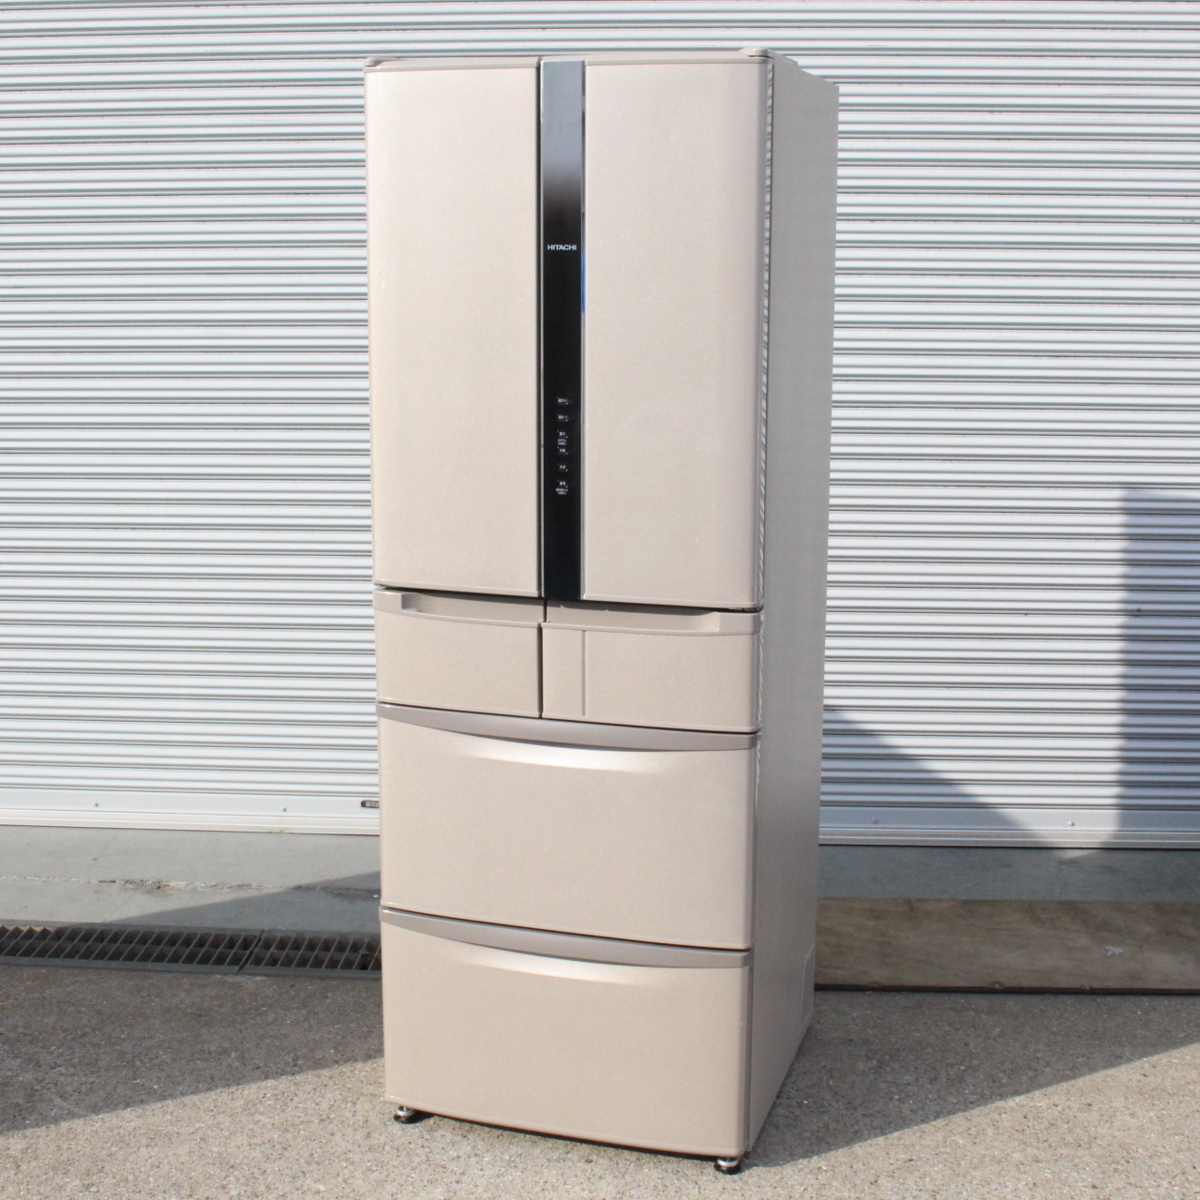 東京都練馬区にて 日立 ノンフロン冷凍冷蔵庫 R-F440E 2015年製 を出張買取させて頂きました。